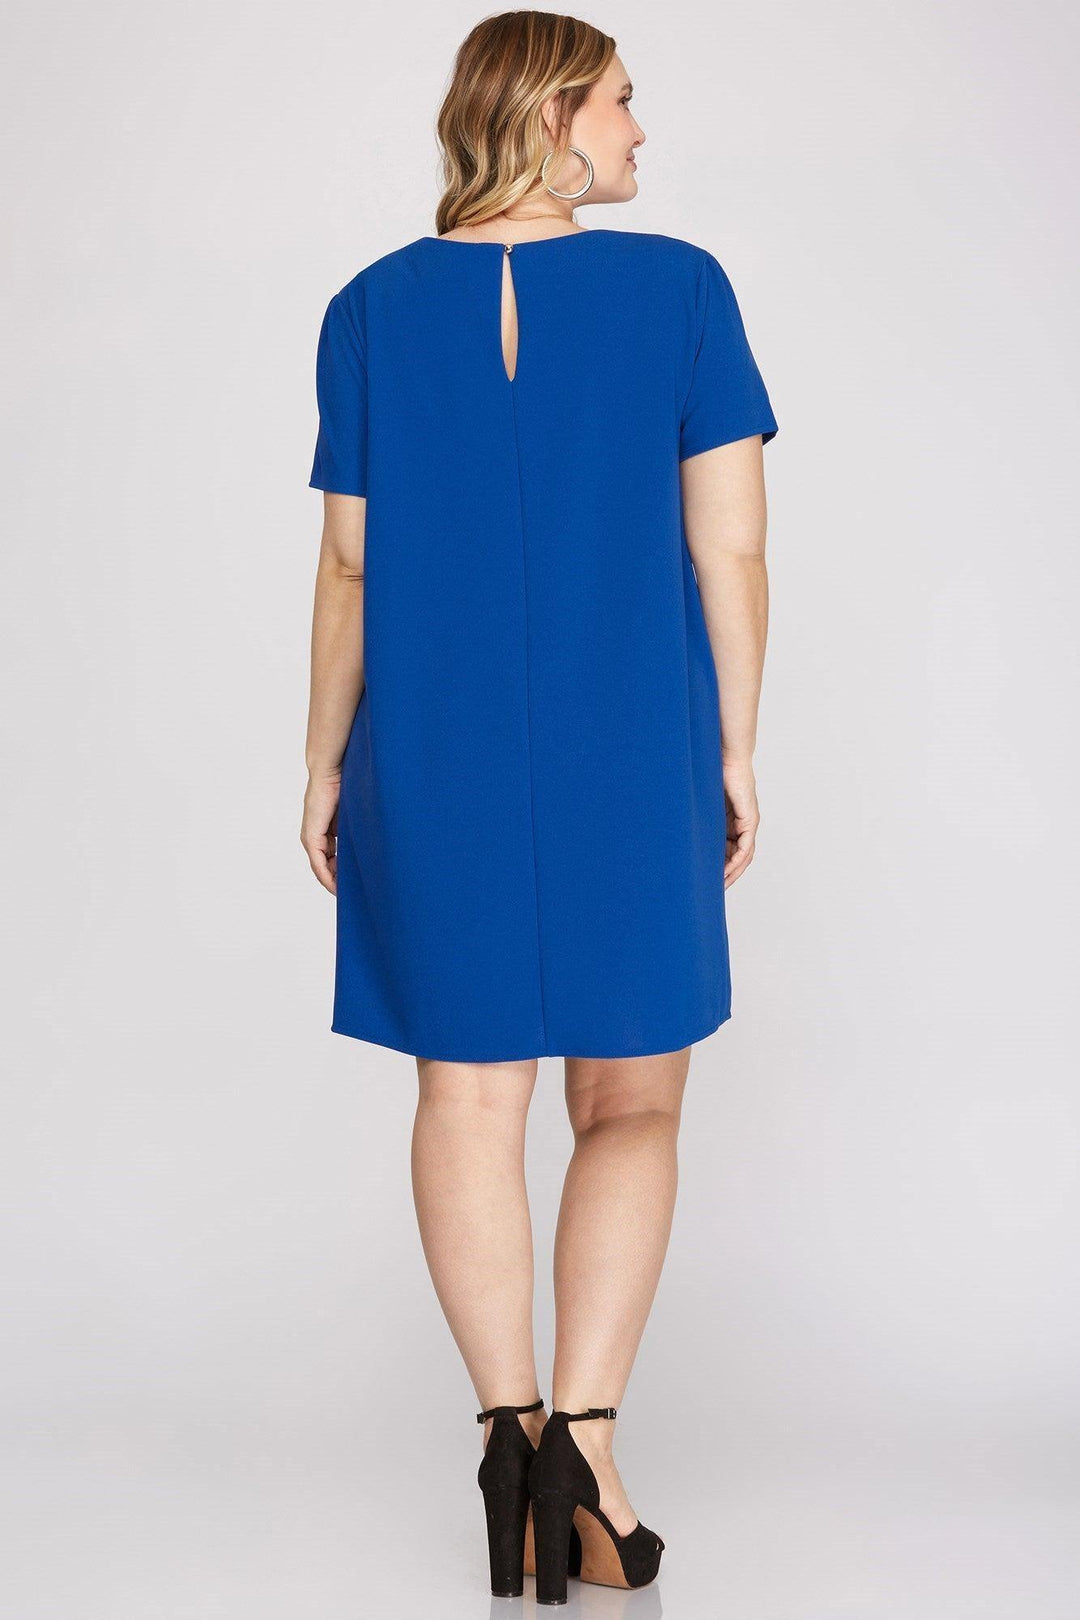 womens plus sized boutique online trendy blue dress houston